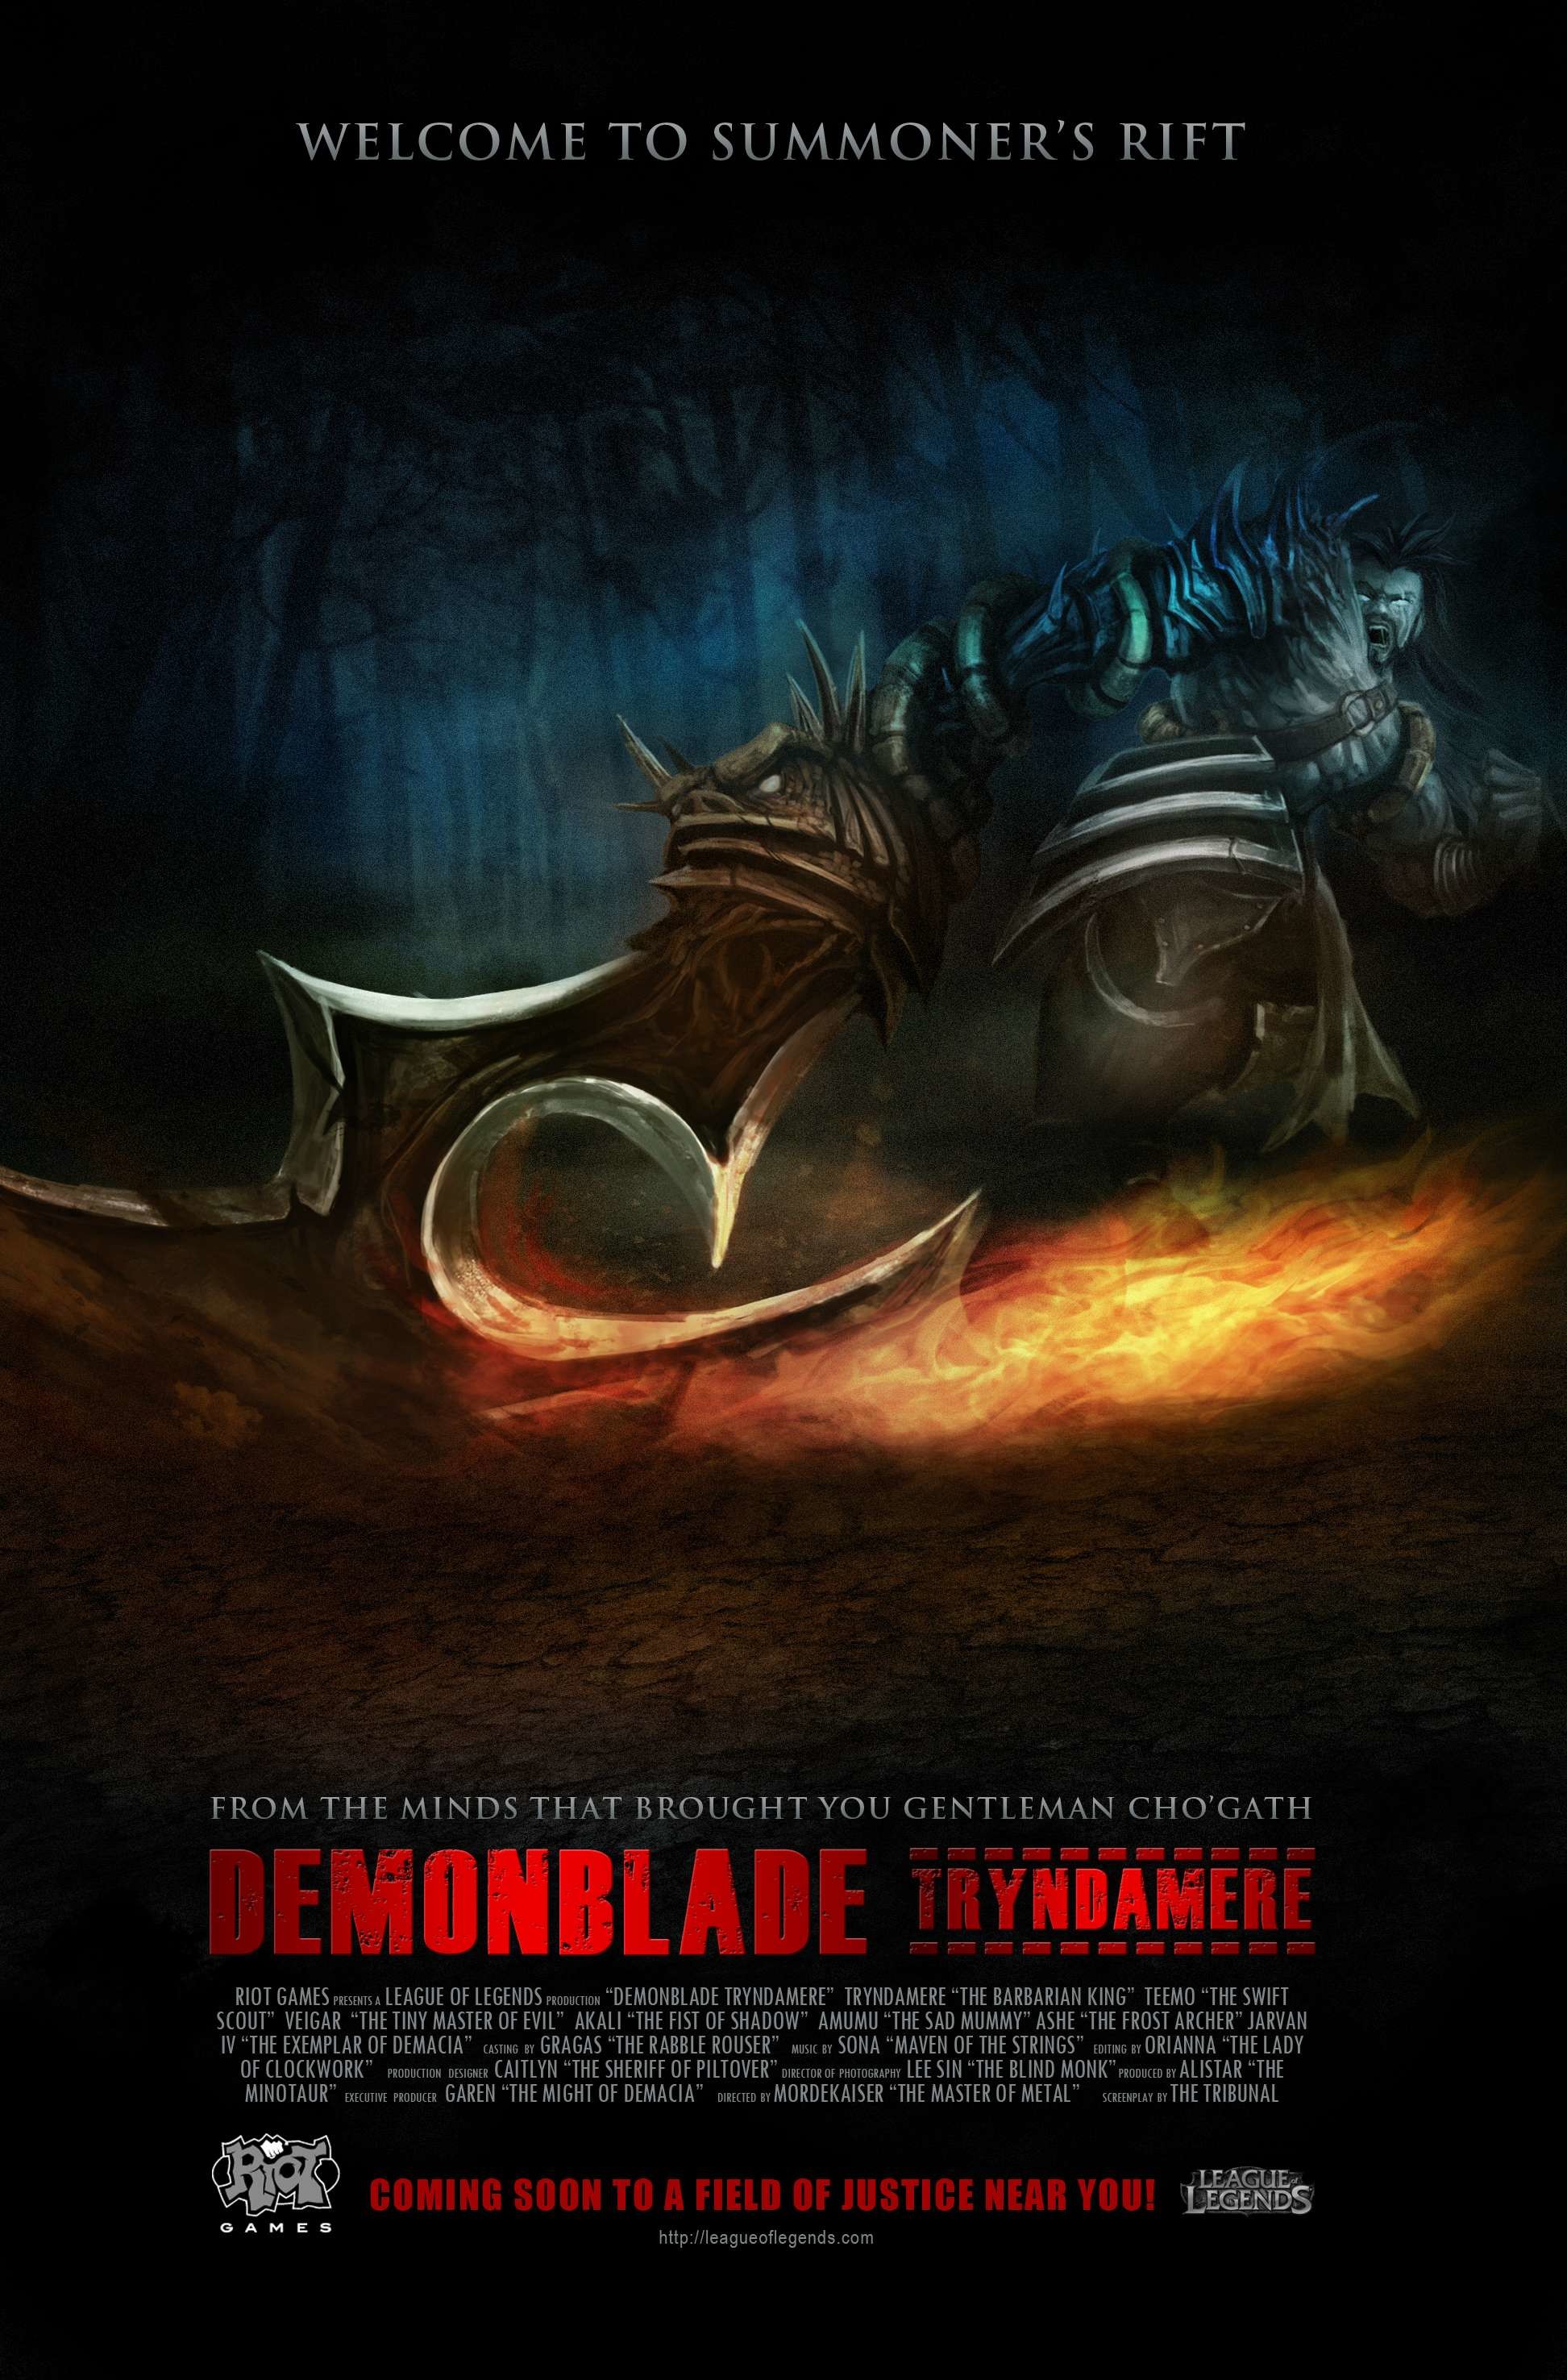 League Of Legends Tryndamere Demonblade Teaser Posterdemonblade - Summoners Rift League Of Legends Poster - HD Wallpaper 